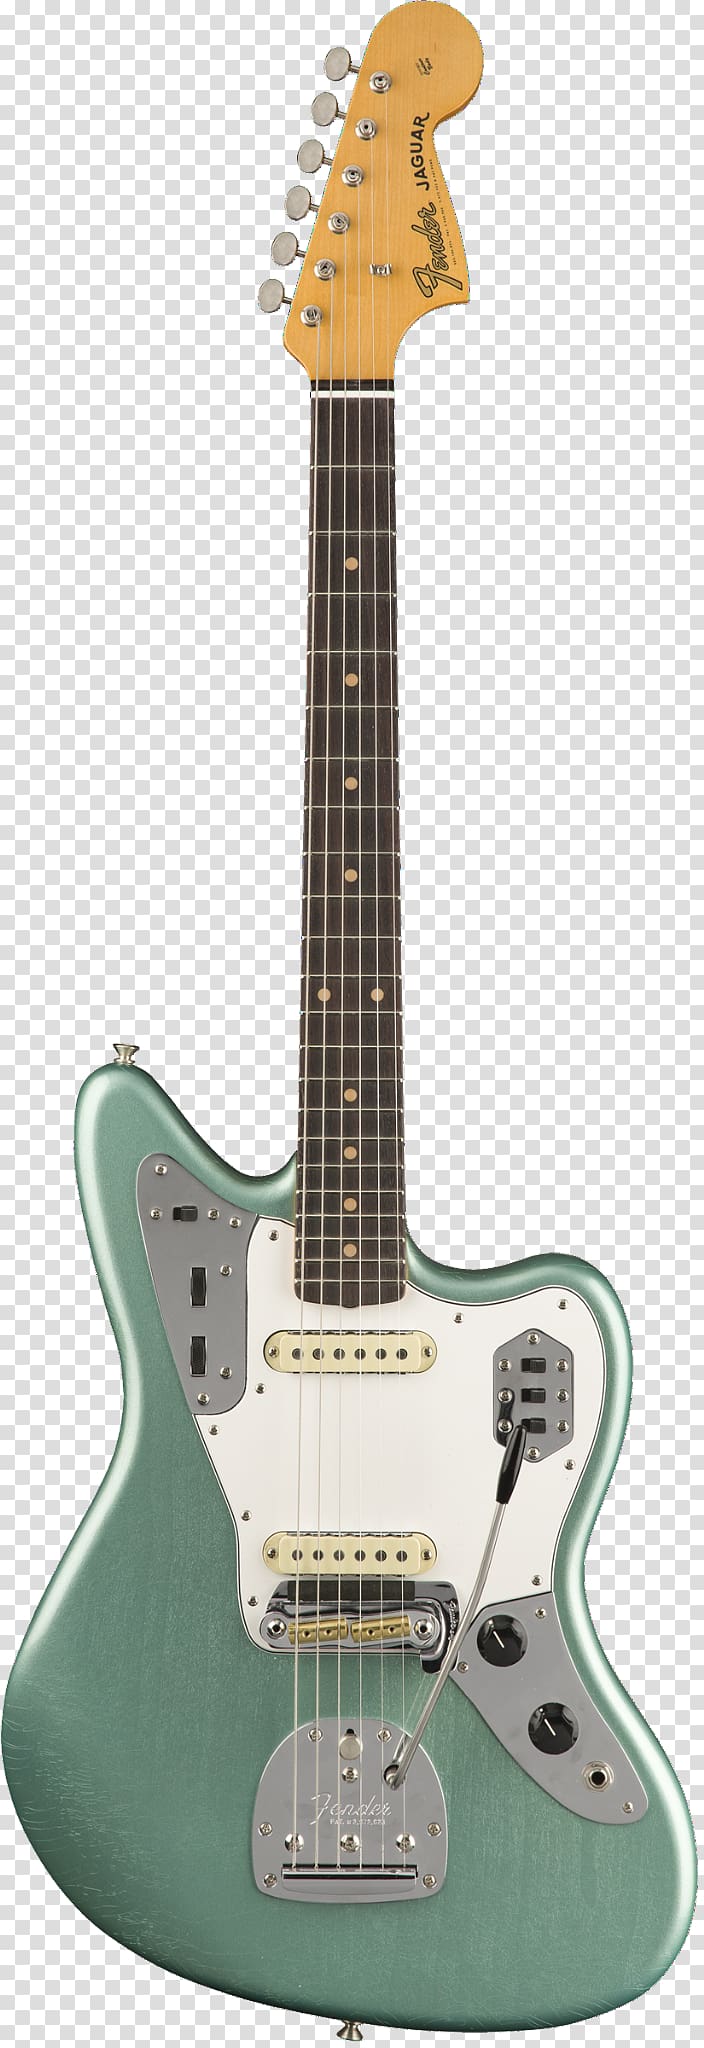 Electric guitar Fender Musical Instruments Corporation Fender Jaguar Fender Custom Shop, guitar transparent background PNG clipart